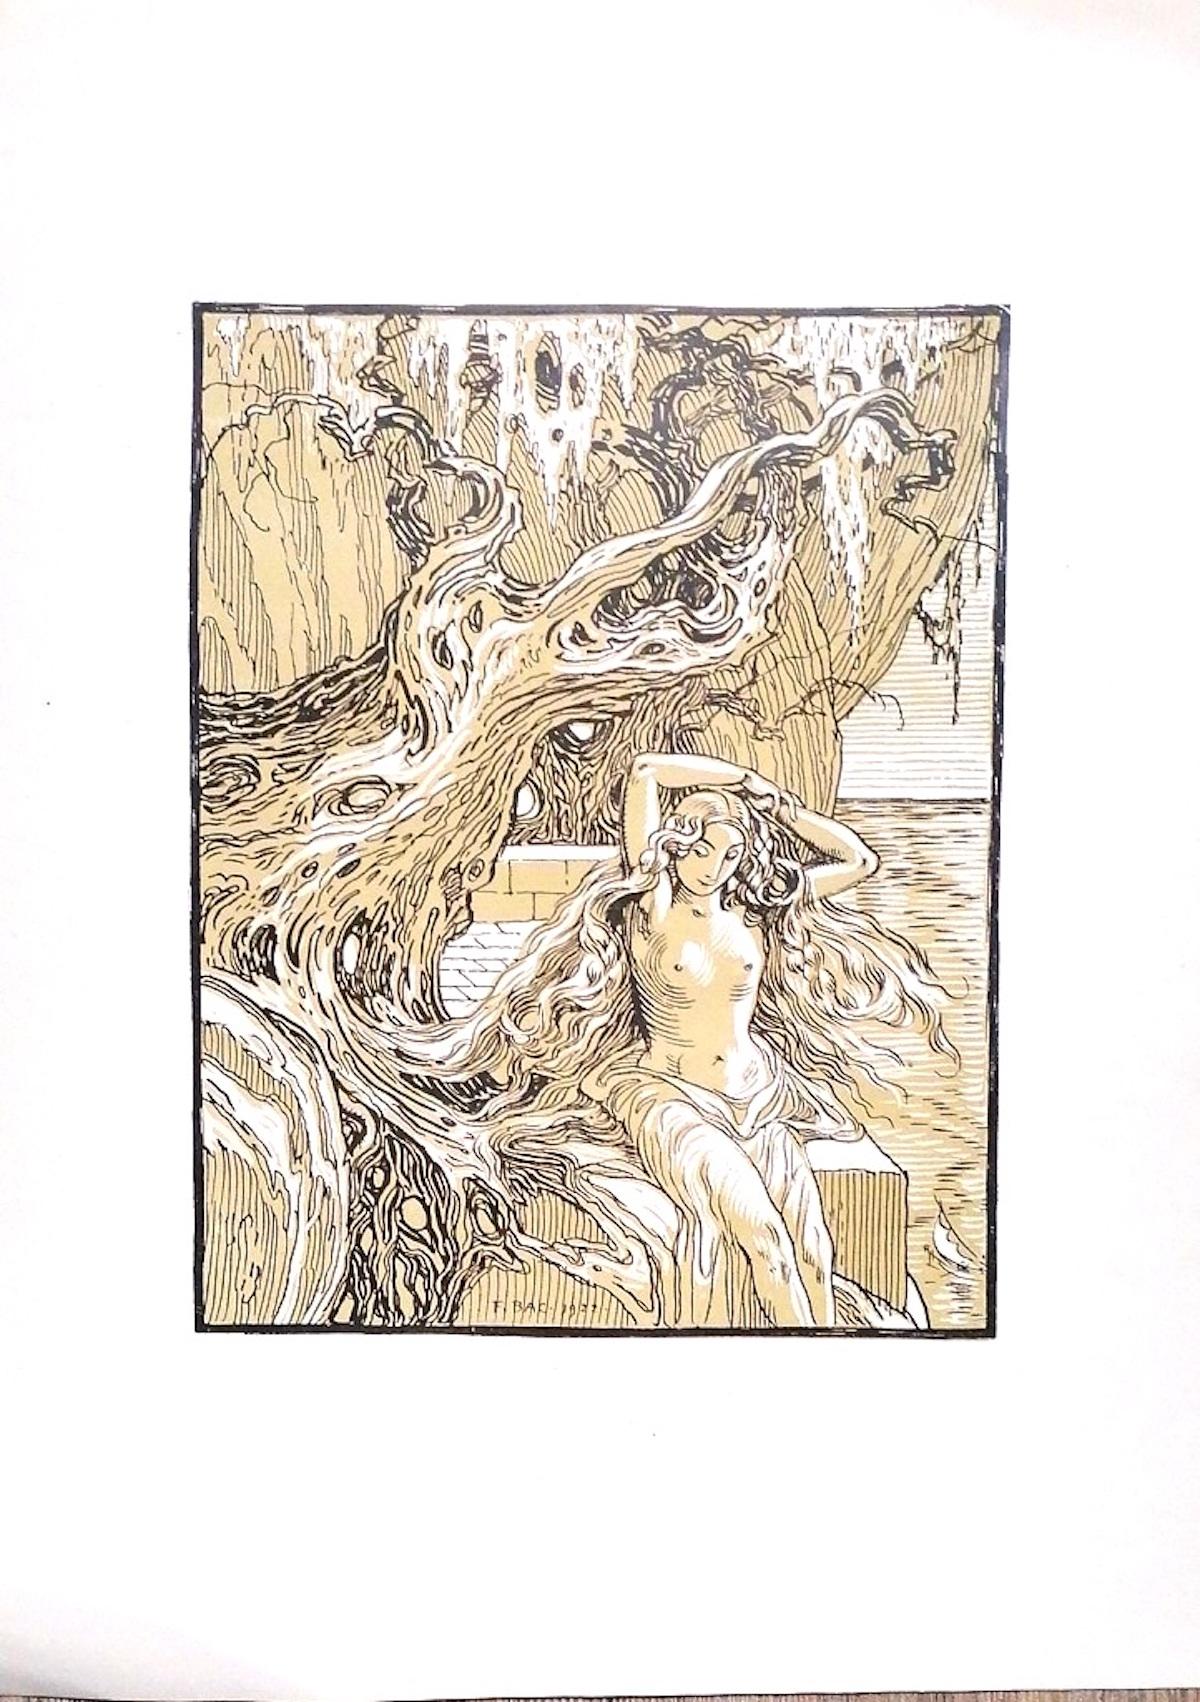 Die Sirene ist ein originelles modernes Kunstwerk von Ferdinand Bac (1859 - 1952) aus dem Jahr 1922.

Signiert und datiert auf der Platte am unteren Mittelrand: F. Bac 1922.

Original-Lithographie auf Elfenbeinpapier.

Perfekte Bedingungen. 

Die